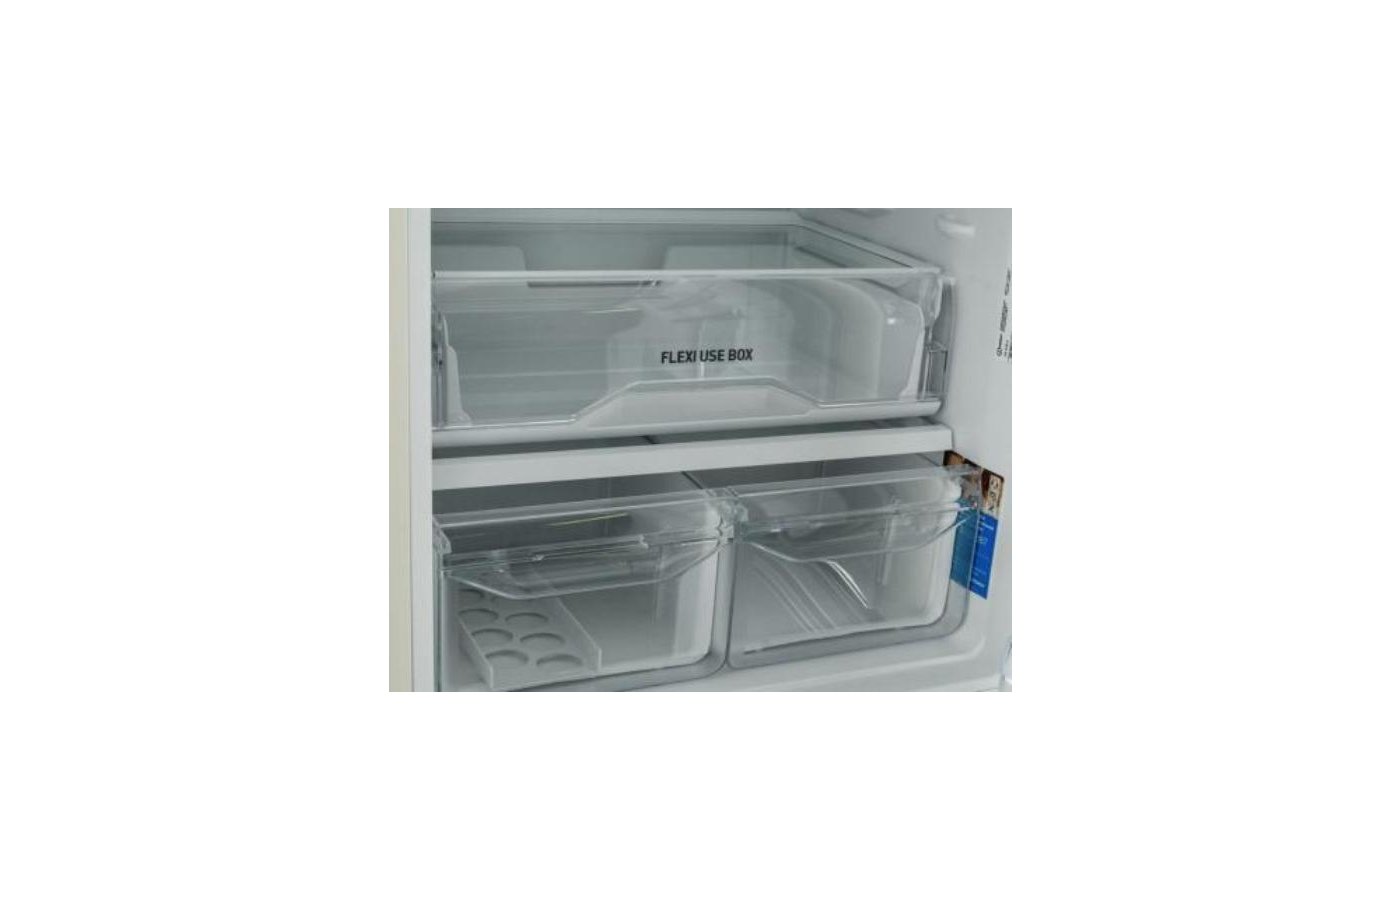 Индезит itr4180 e. Холодильник Индезит Flexi use Box. Холодильник индезит 5180